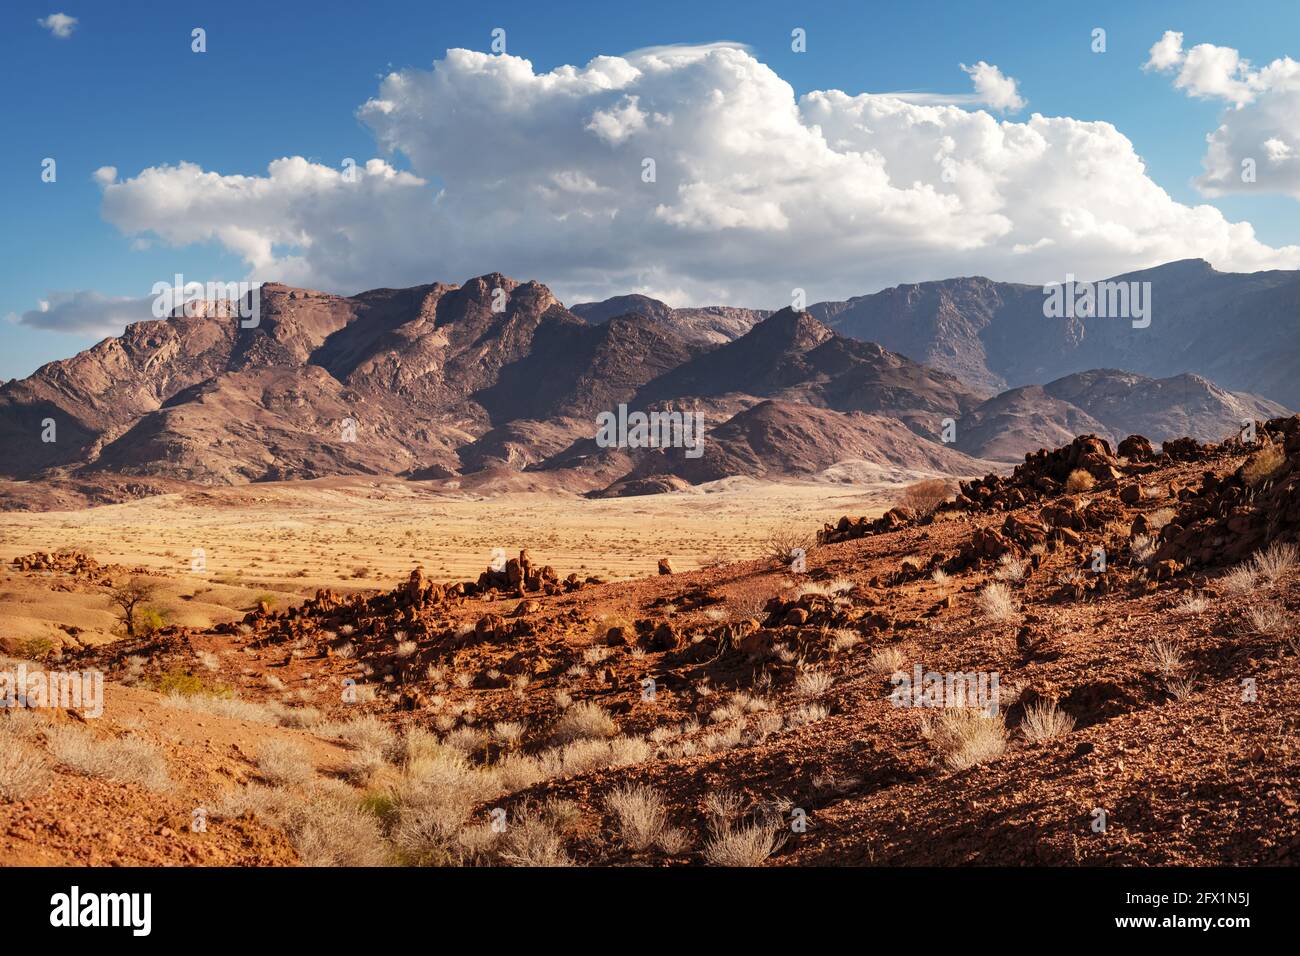 Rochers du désert de Namib, Namibie, Afrique. Montagnes rouges et savane jaune avec fond bleu ciel. Photographie de paysage Banque D'Images